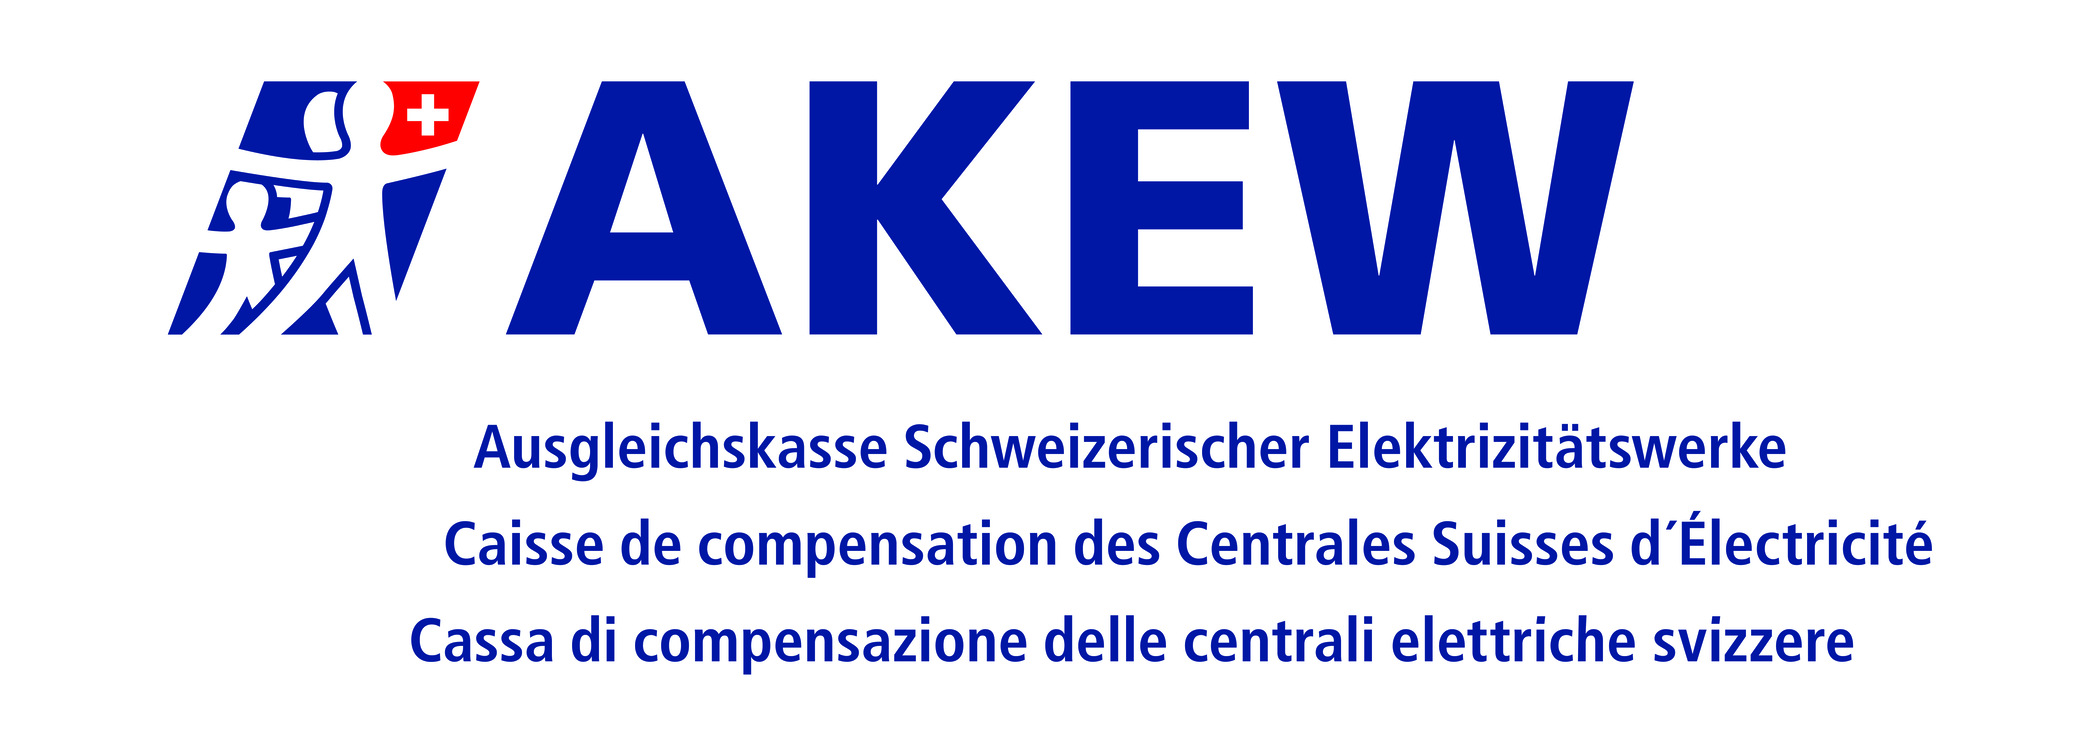 Schweizerische Elektrizitätswerke
Ausgleichskasse AK037